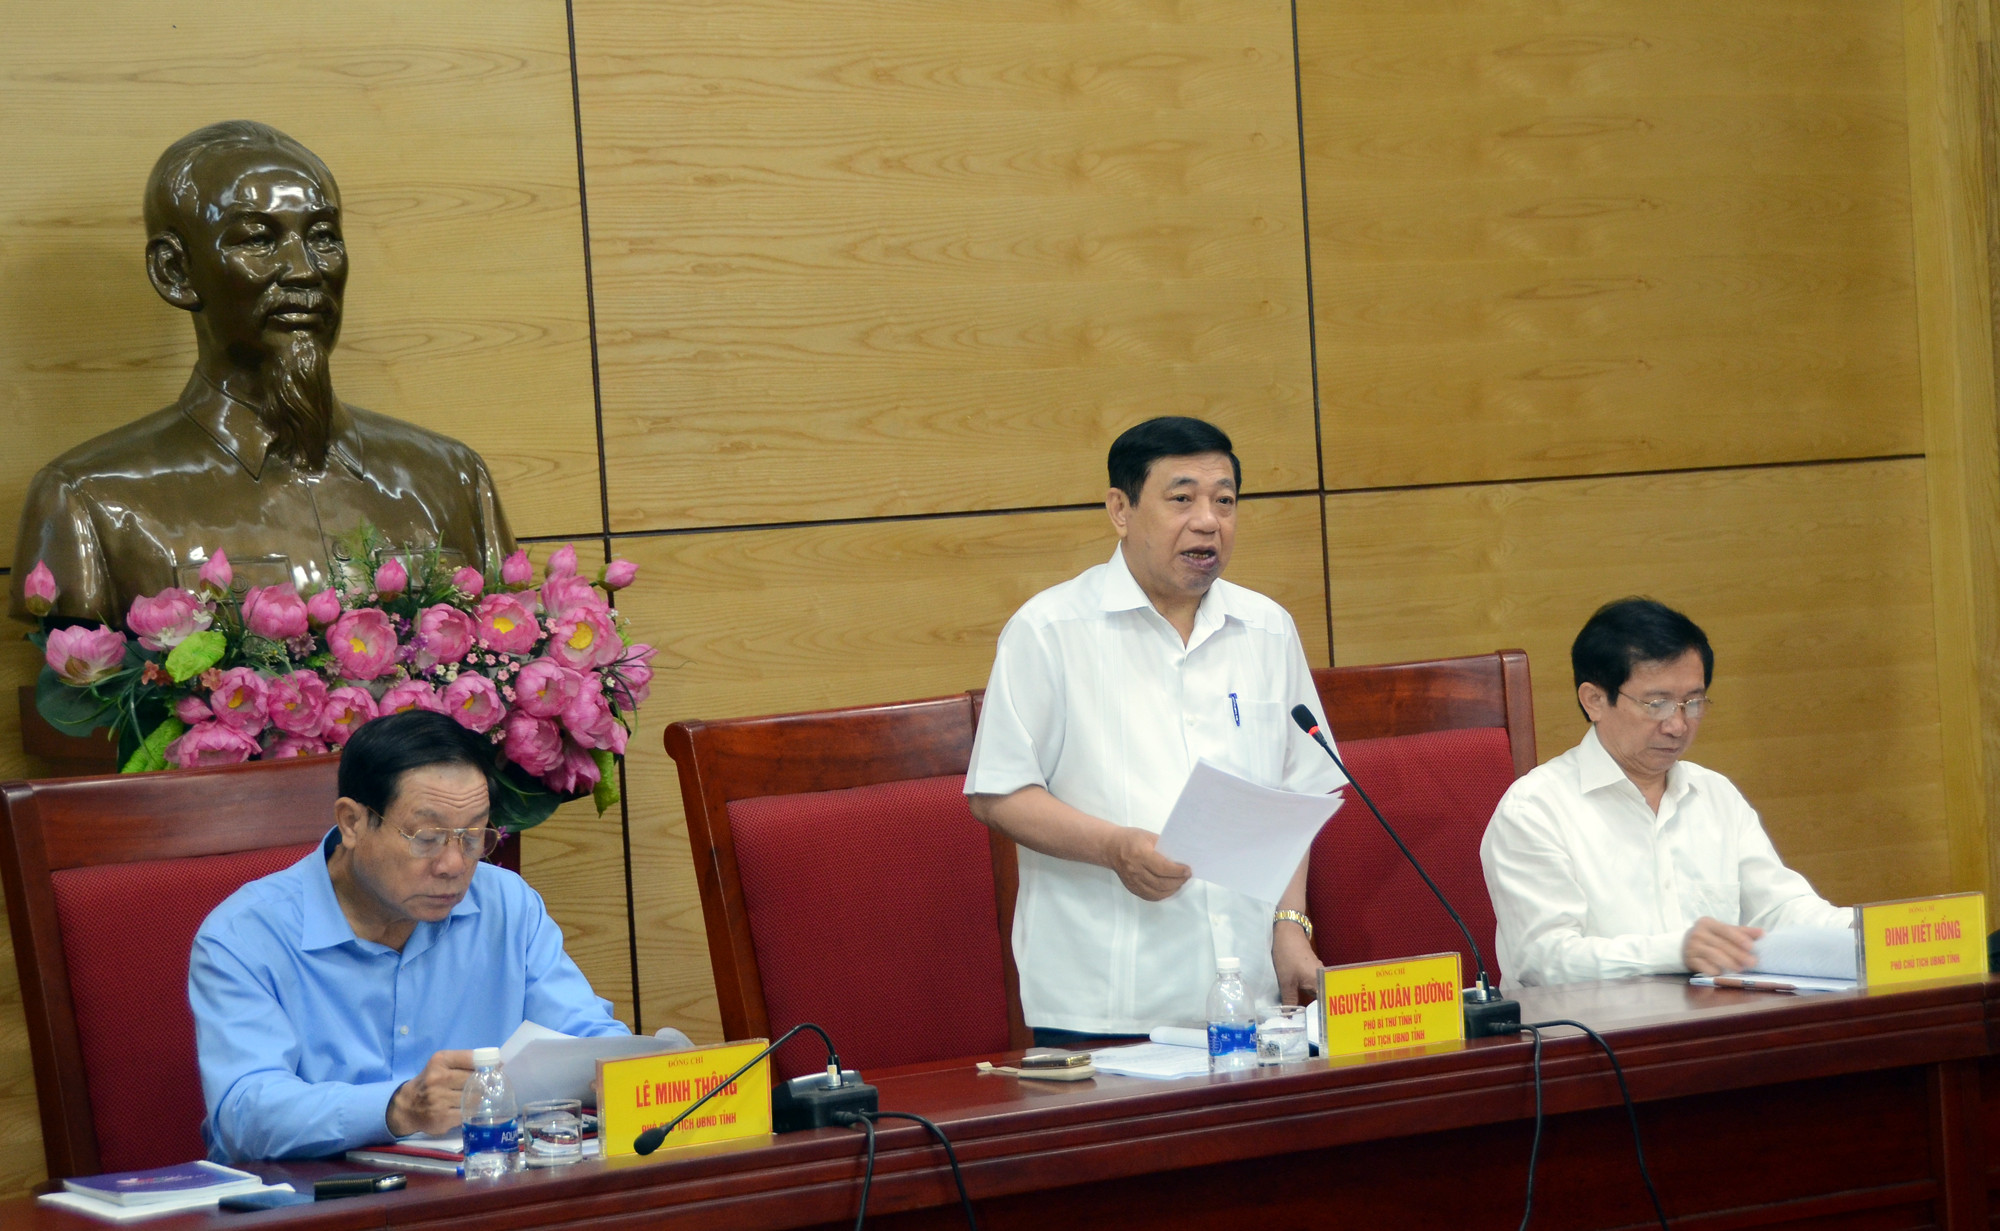 Đồng chí Nguyễn Xuân Đường yêu cầu chậm nhất đến đầu tháng 6/2018 Quyết định quy định phân công trách nhiệm phải được ban hành. Ảnh: Thành Chung